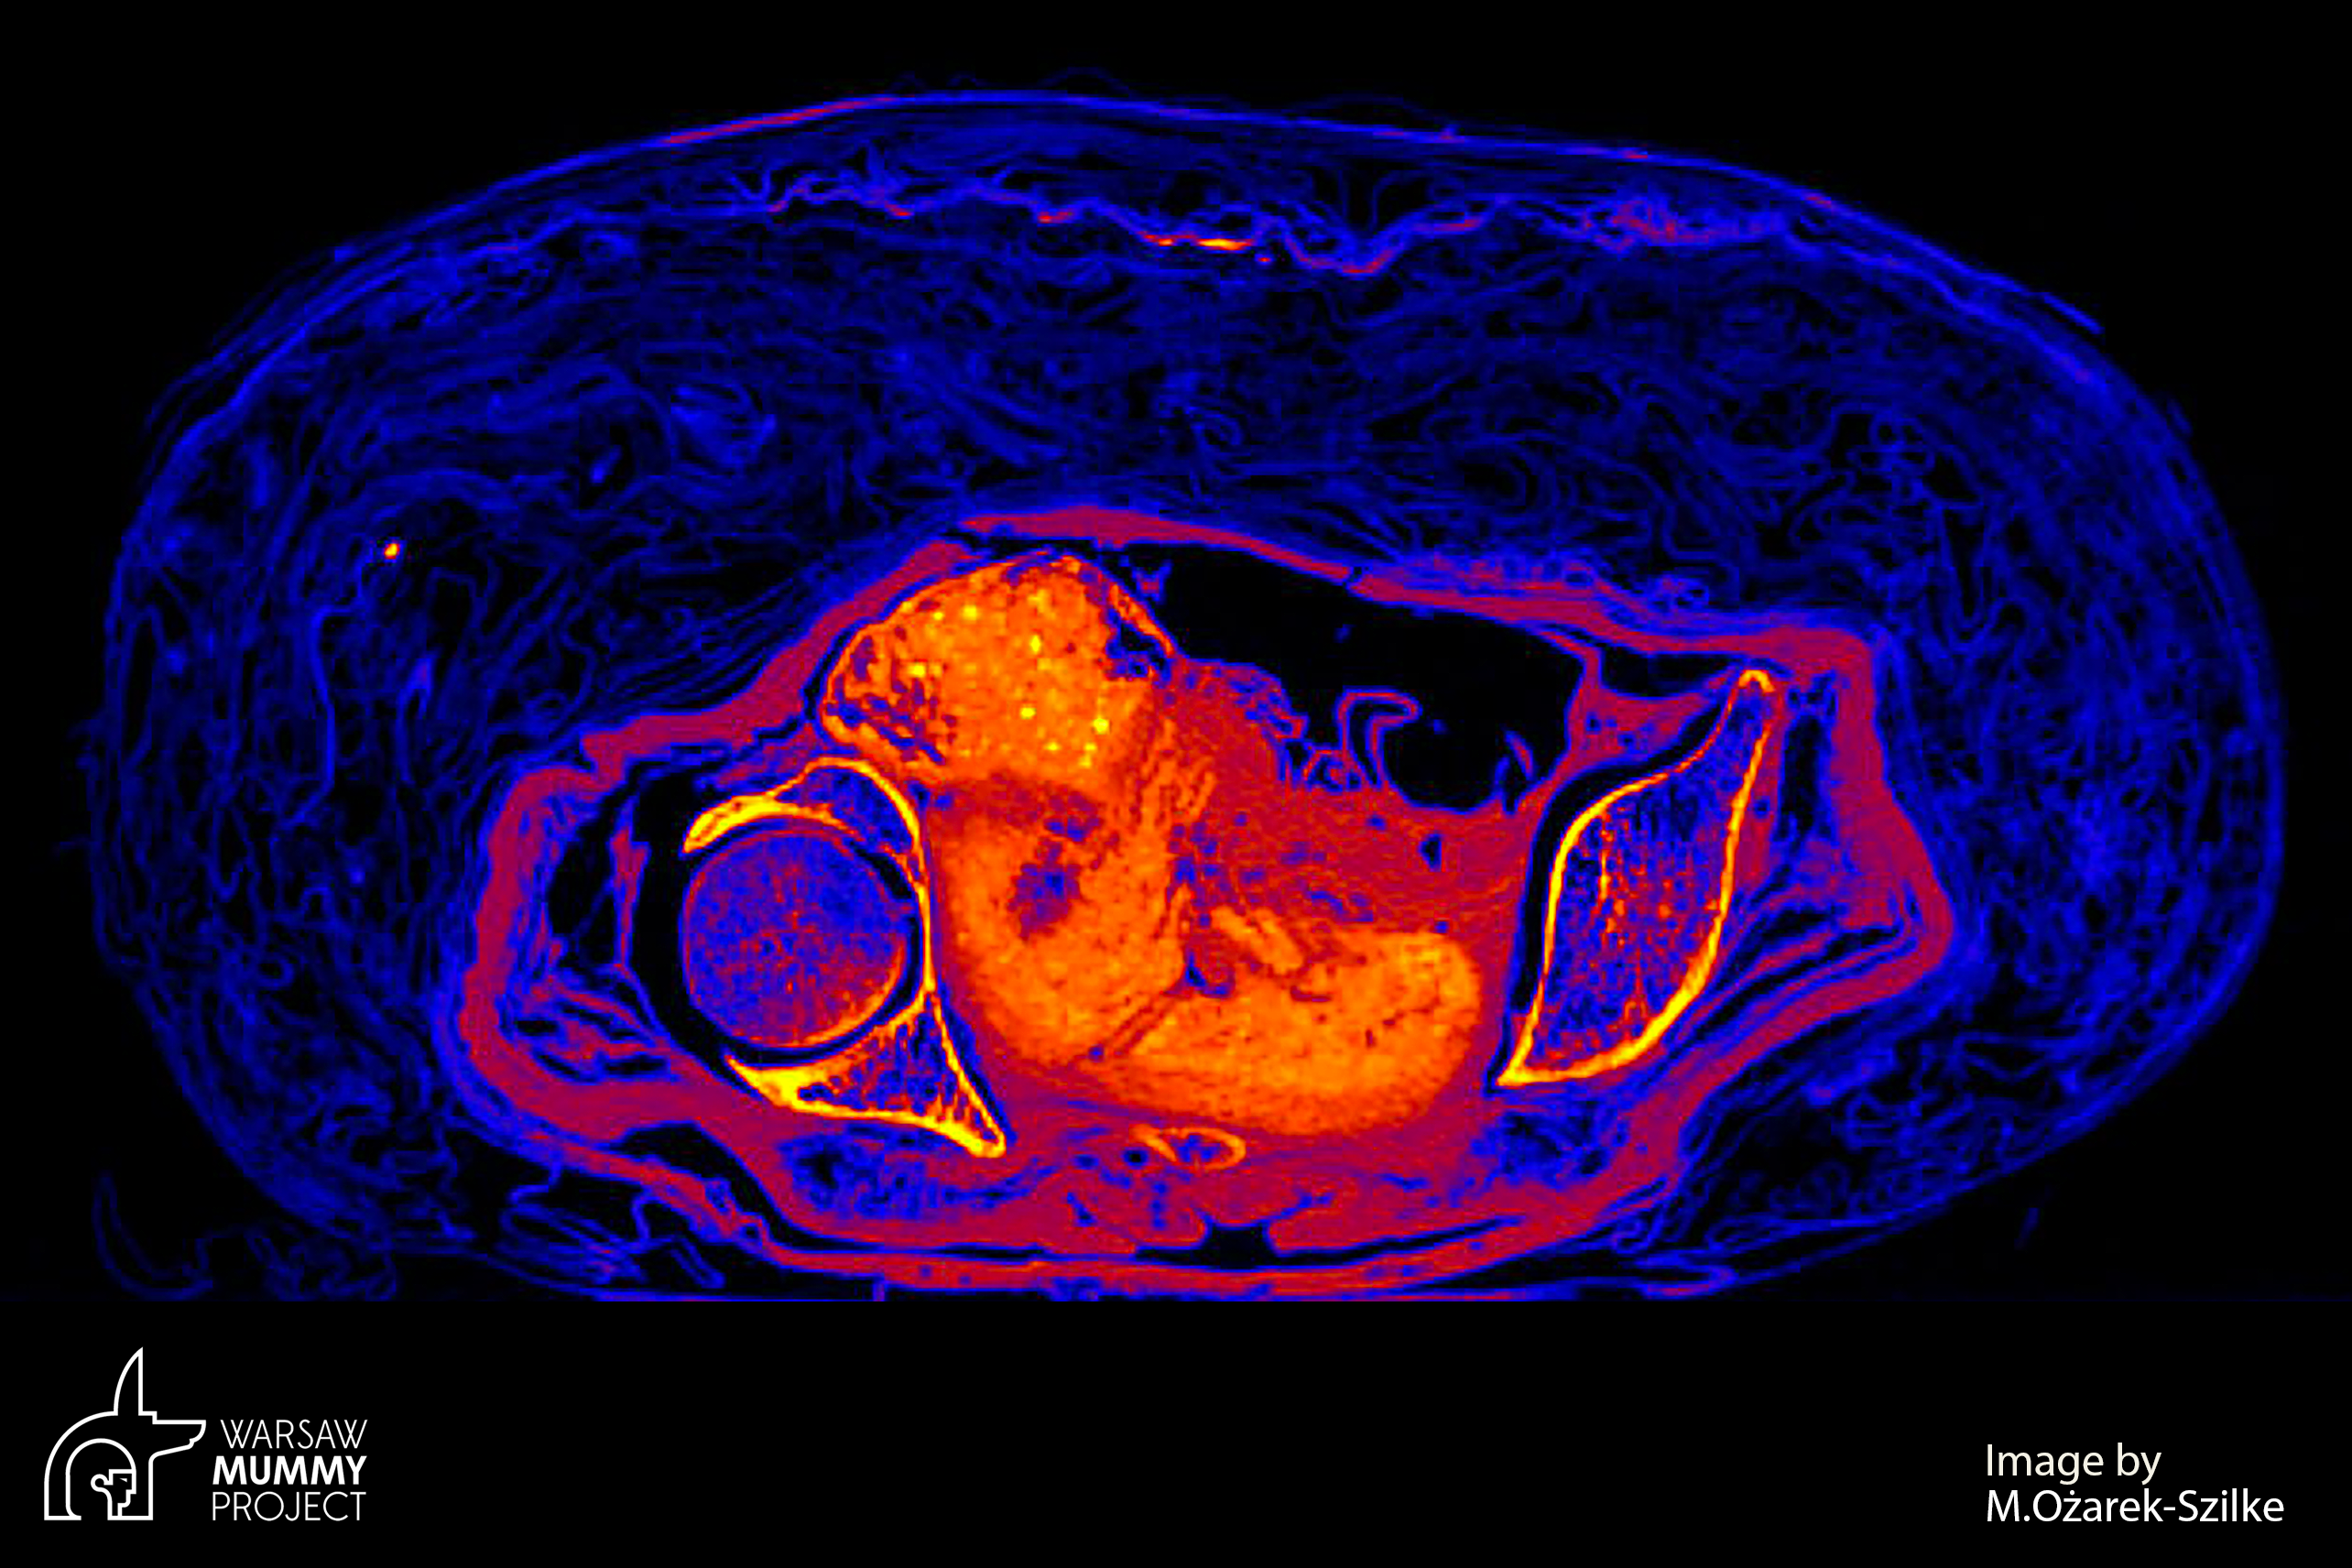 Obraz z tomografu przypomina płód odpowiadający 26.-30. tygodniowi ciąży